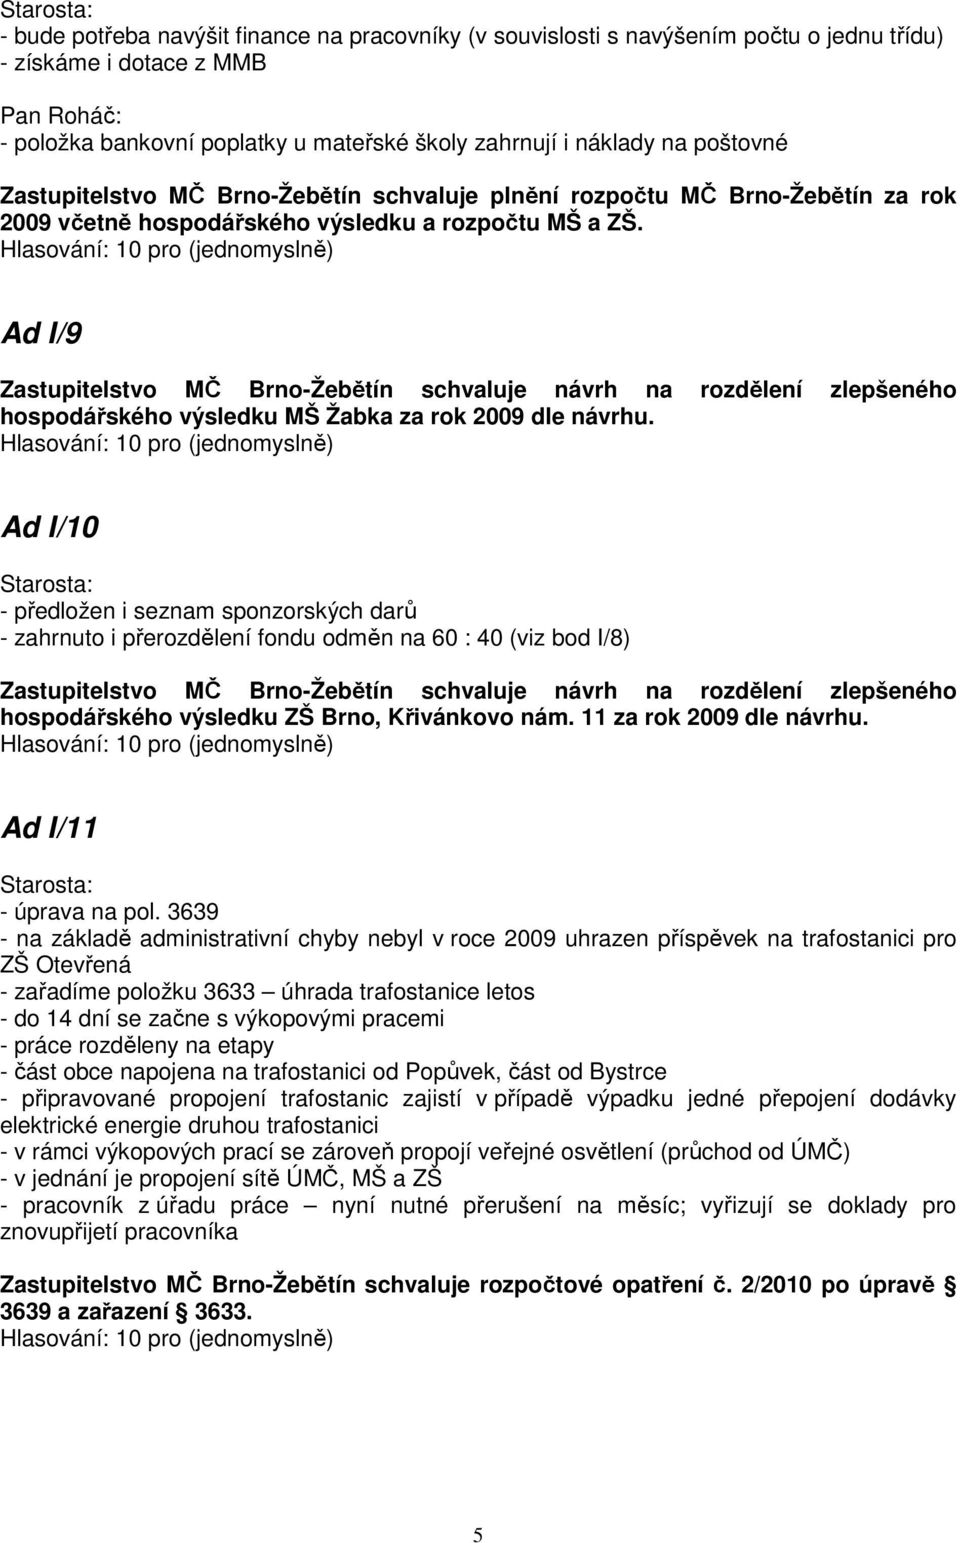 Ad I/9 Zastupitelstvo MČ Brno-Žebětín schvaluje návrh na rozdělení zlepšeného hospodářského výsledku MŠ Žabka za rok 2009 dle návrhu.